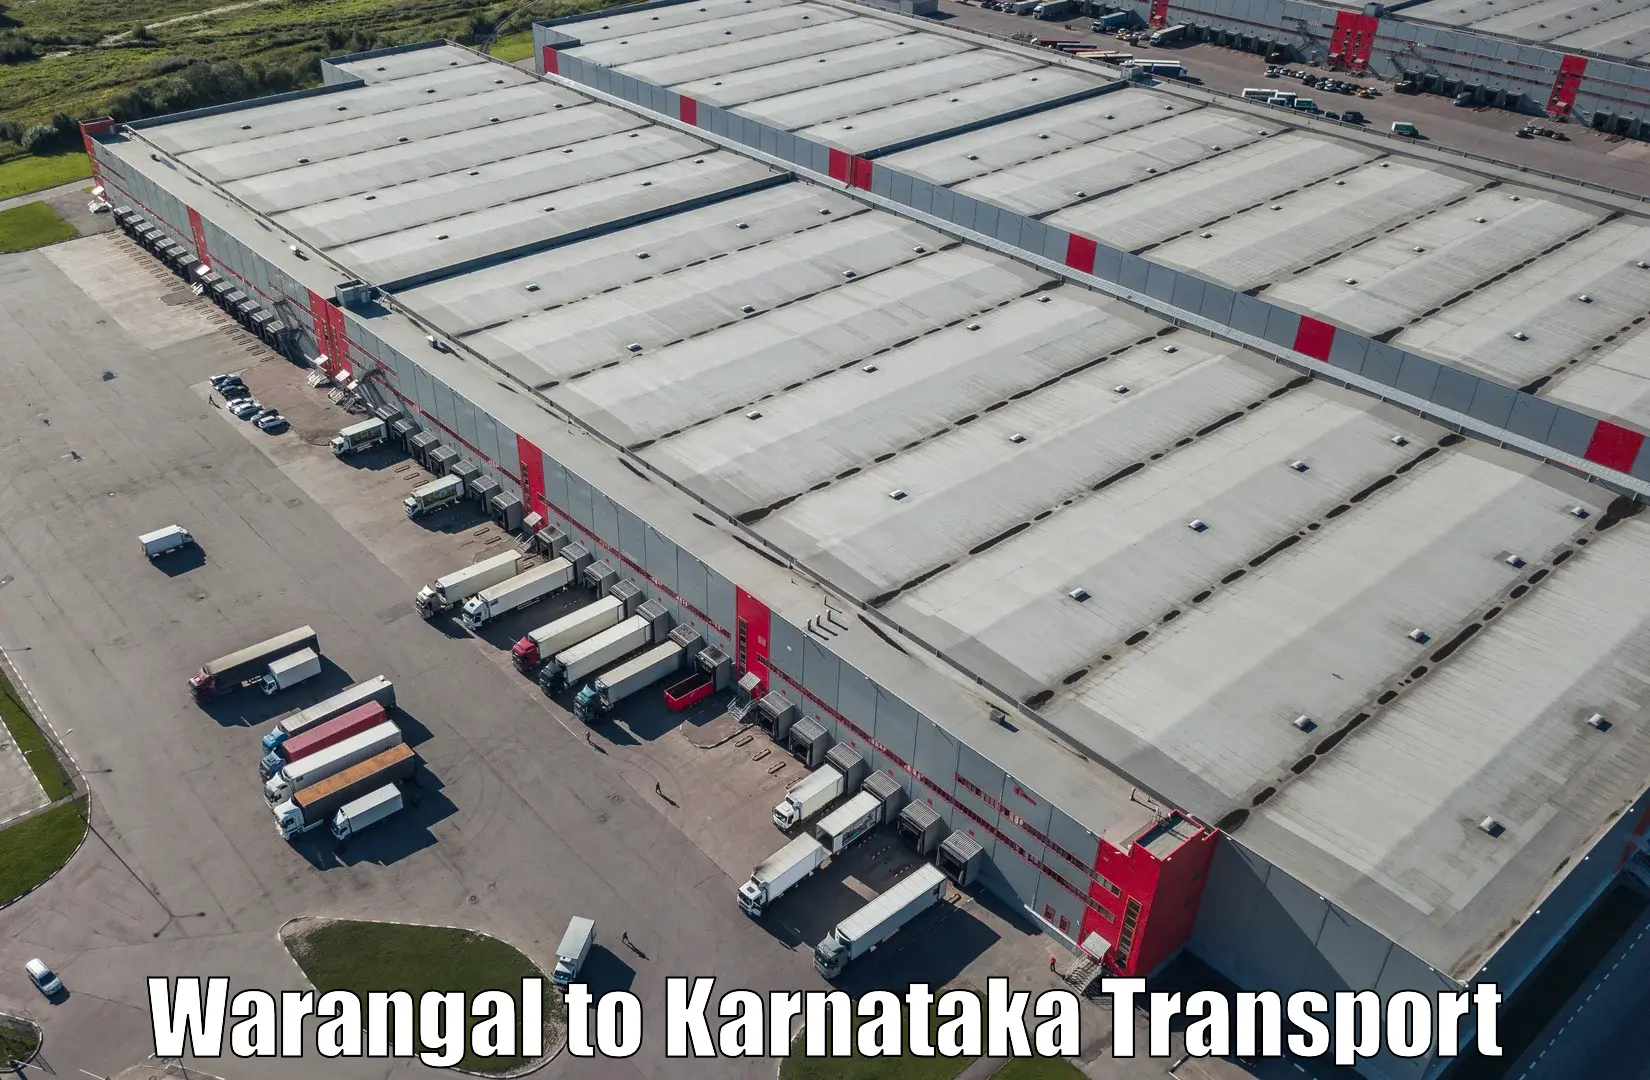 Land transport services Warangal to Bangalore